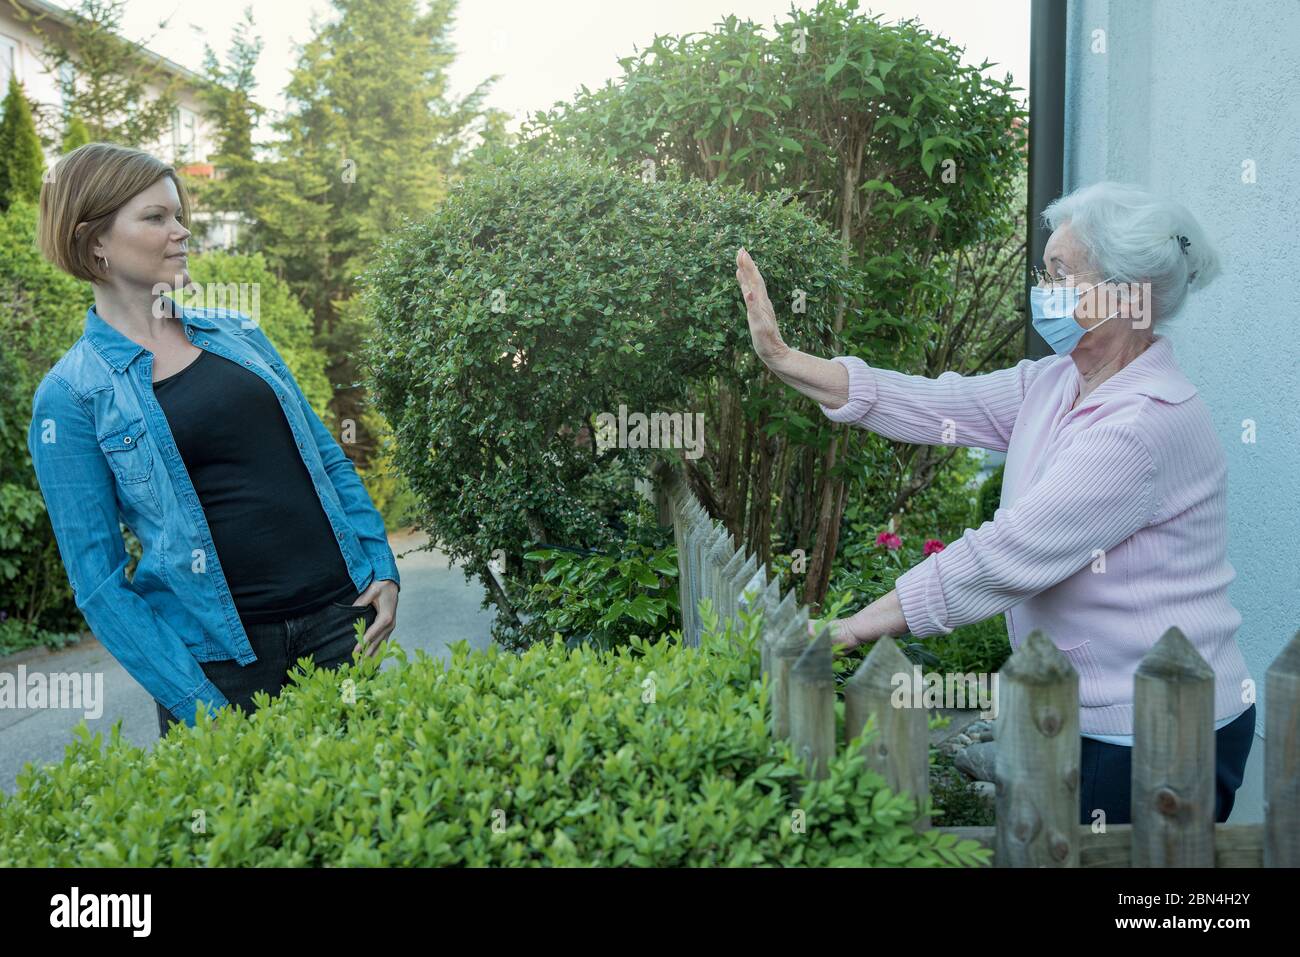 Donna anziana con maschera facciale mostra la distanza di sicurezza verso la donna vicina Foto Stock